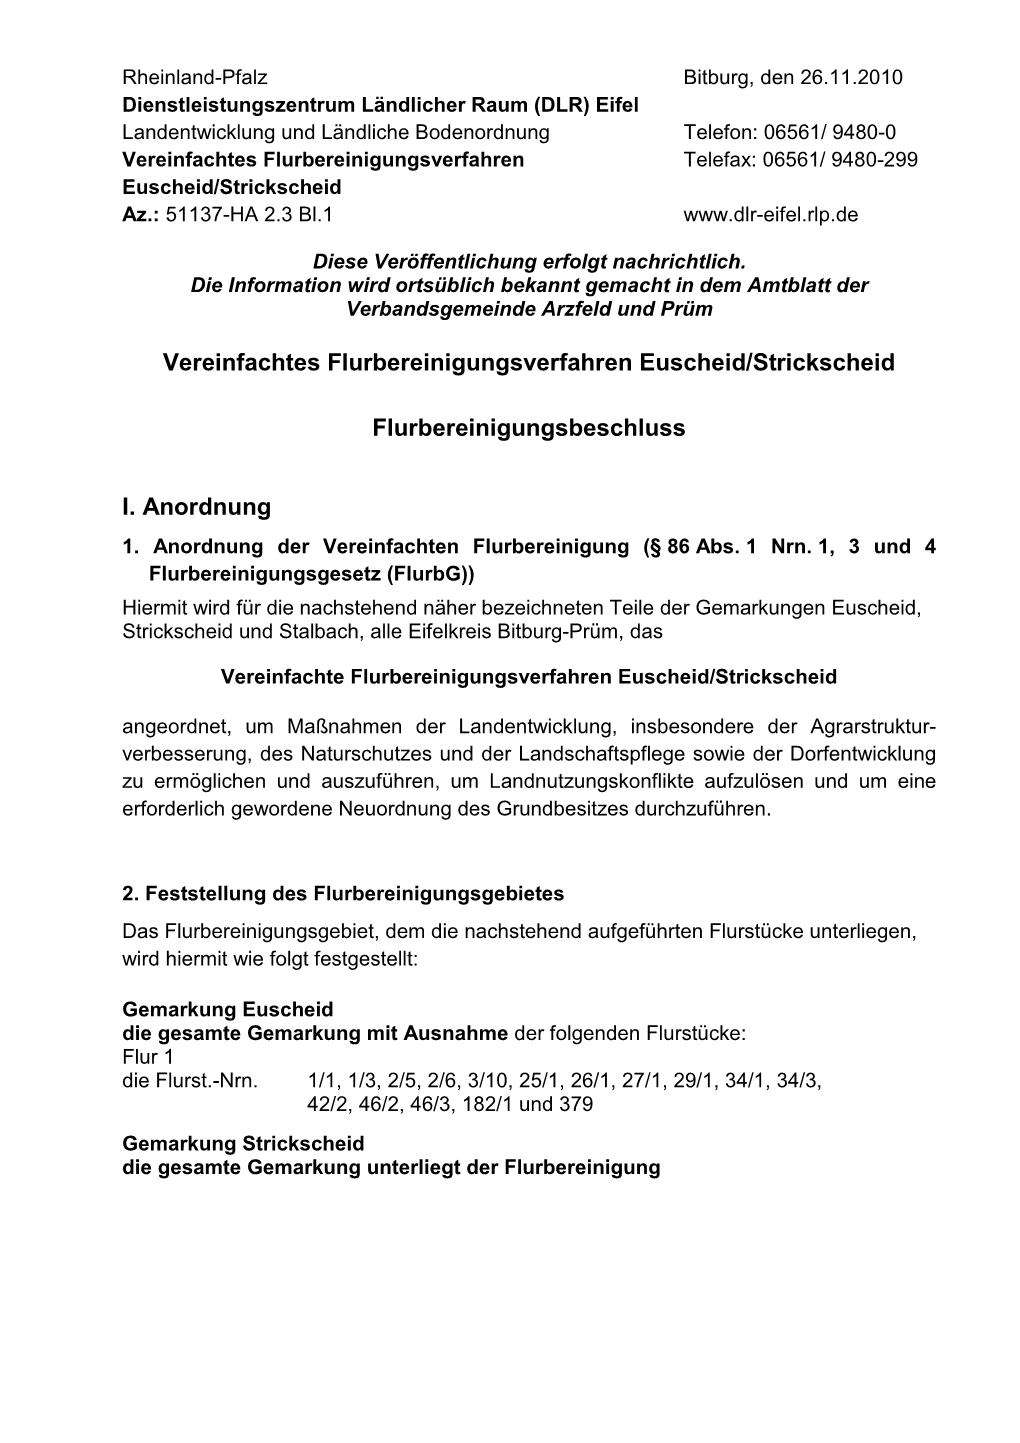 Vereinfachtes Flurbereinigungsverfahren Telefax: 06561/ 9480-299 Euscheid/Strickscheid Az.: 51137-HA 2.3 Bl.1